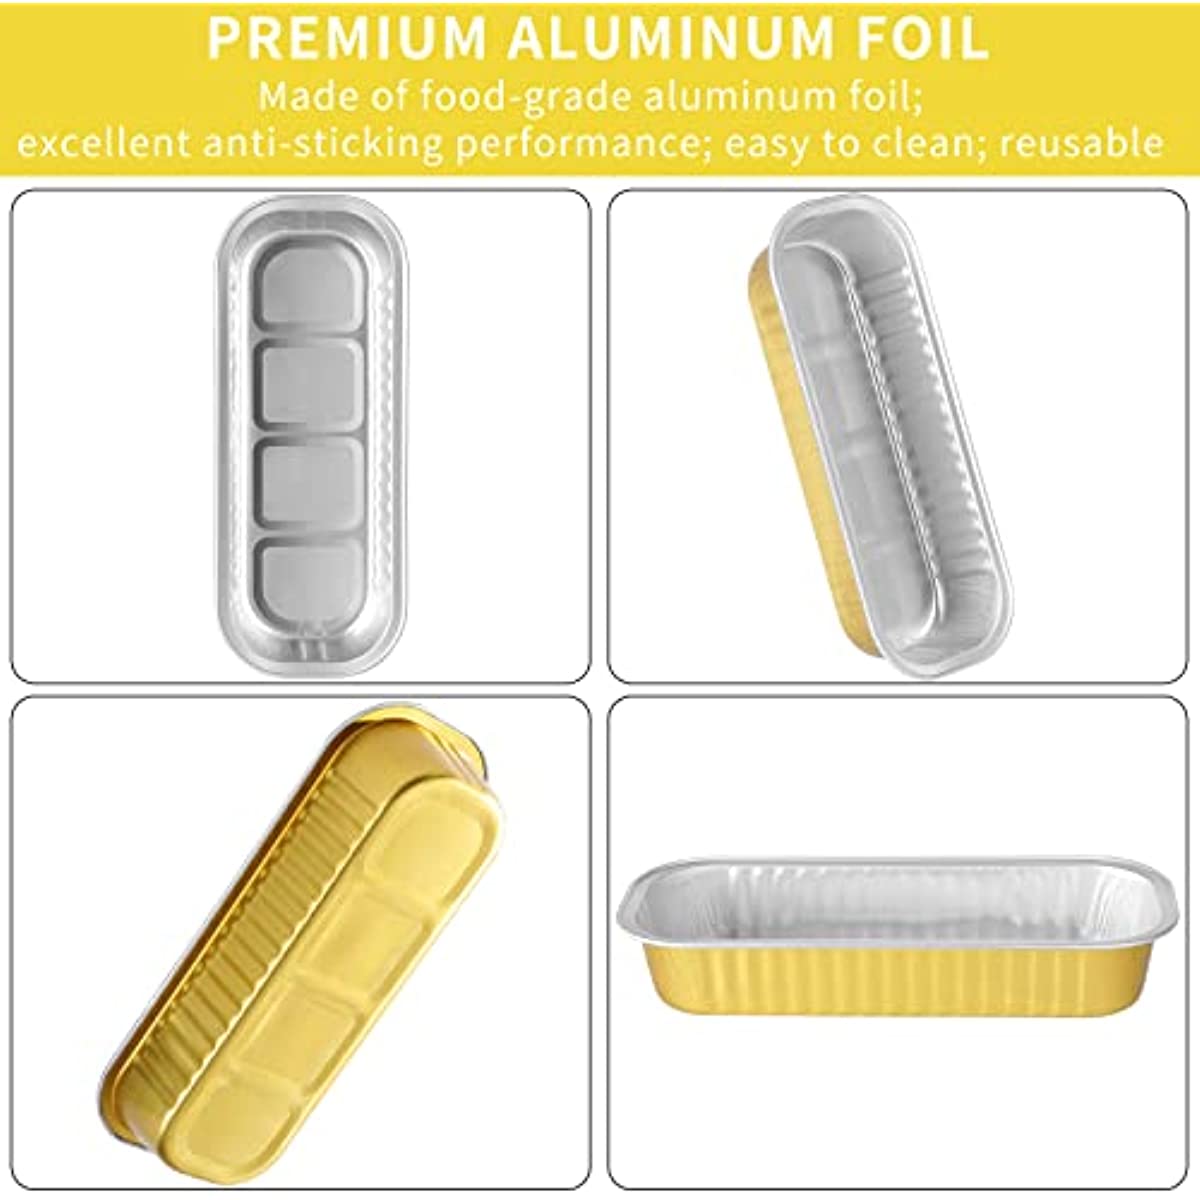 10pcs/20pcs/30pcs Aluminum Foil Mini Loaf Pans with Lids